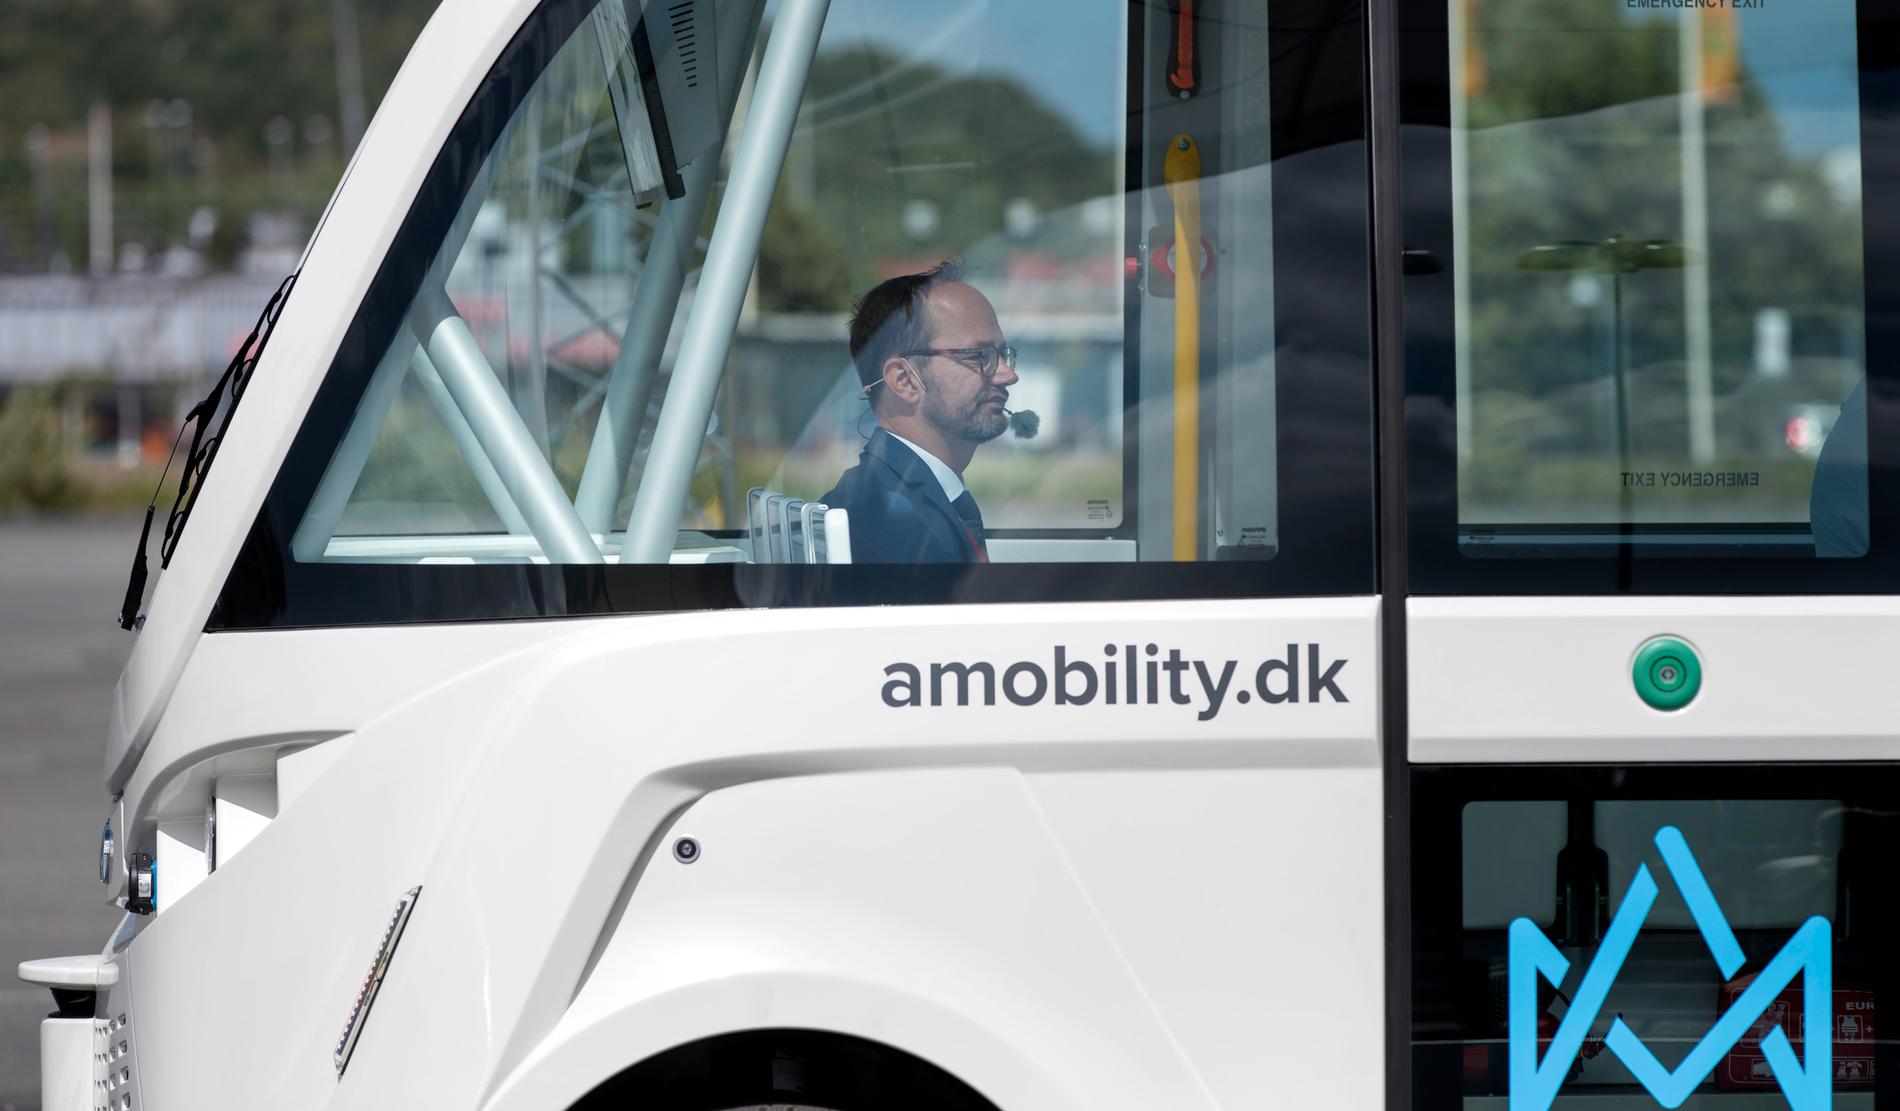 Infrastrukturminister Tomas Eneroth (S) åker självkörande minibuss under en demonstration av självkörande fordon i Frihamnen i Göteborg.